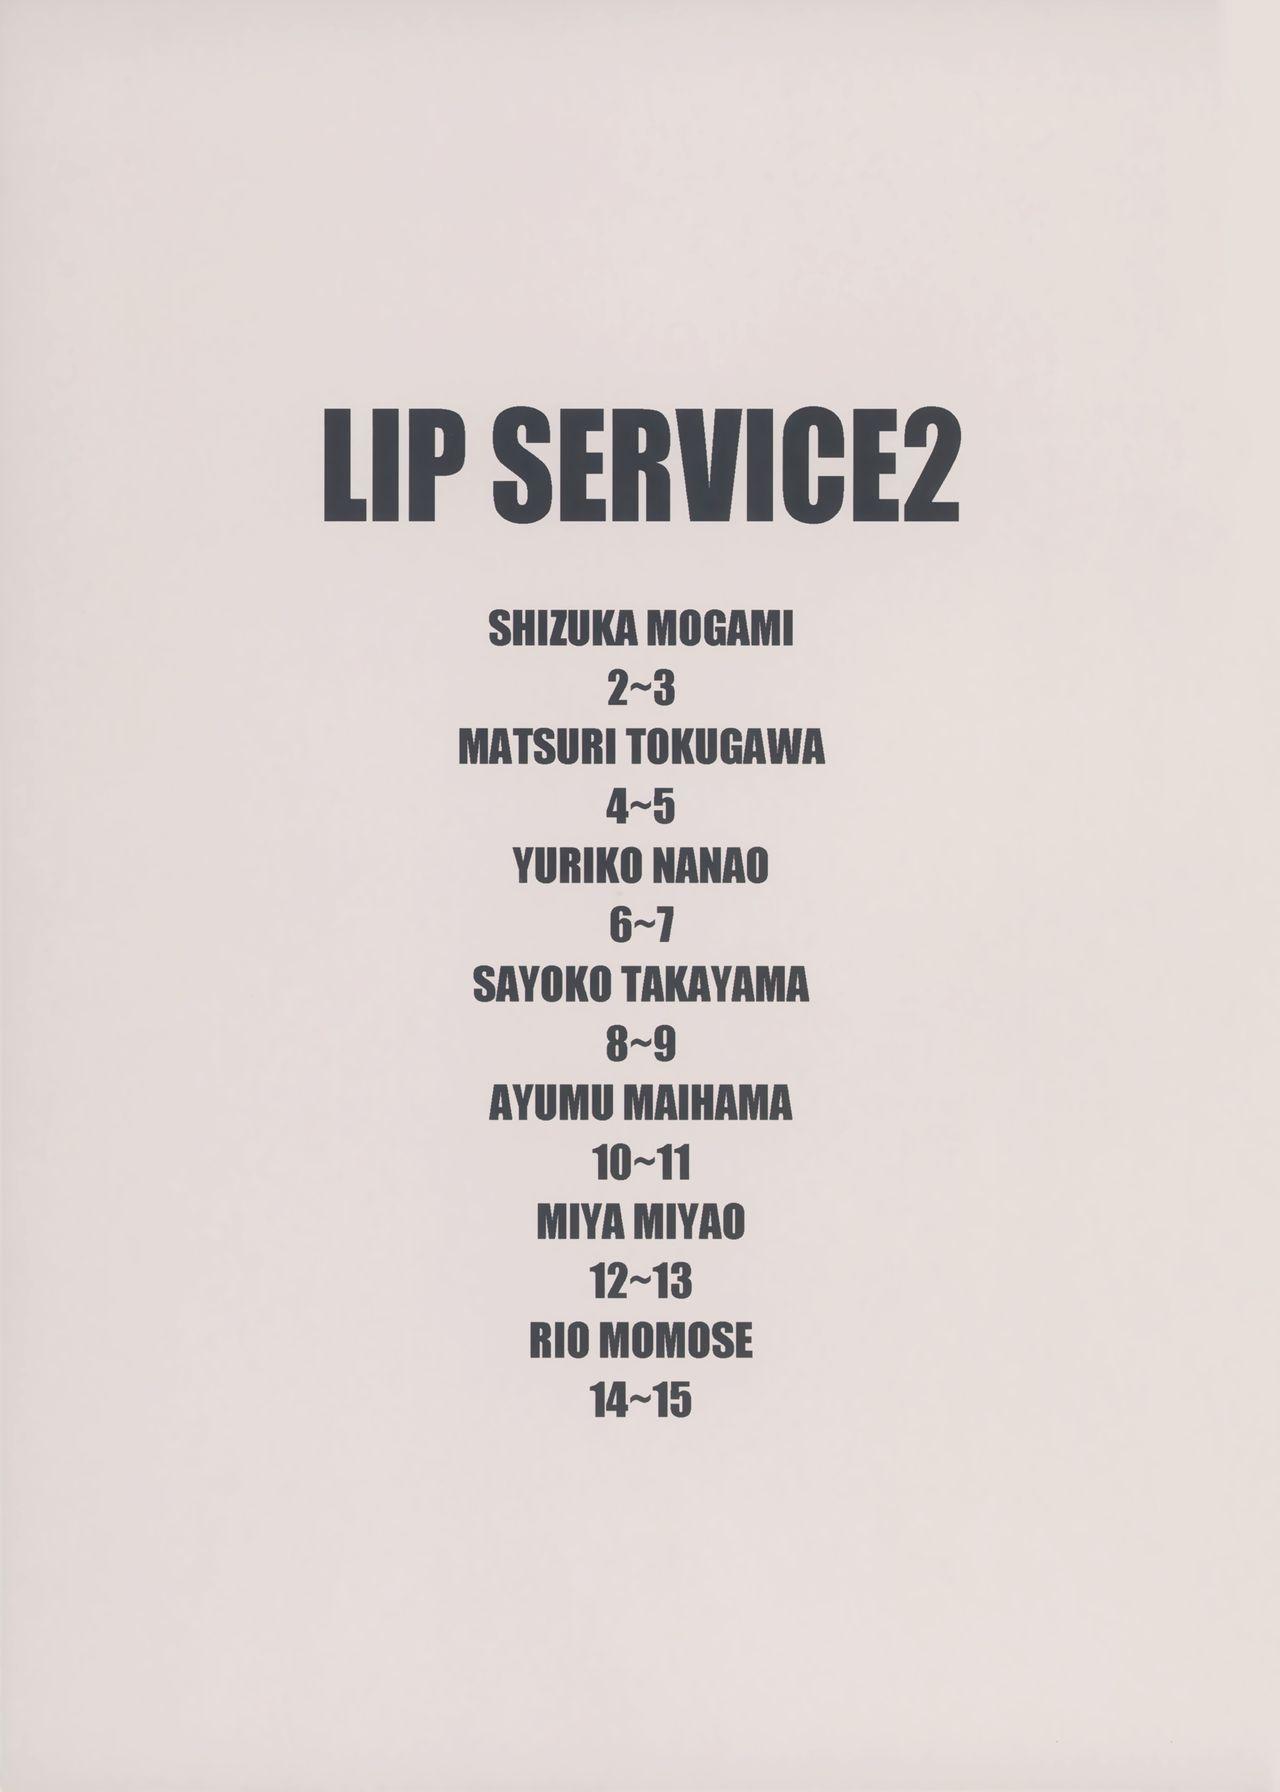 LIP SERVICE2 11